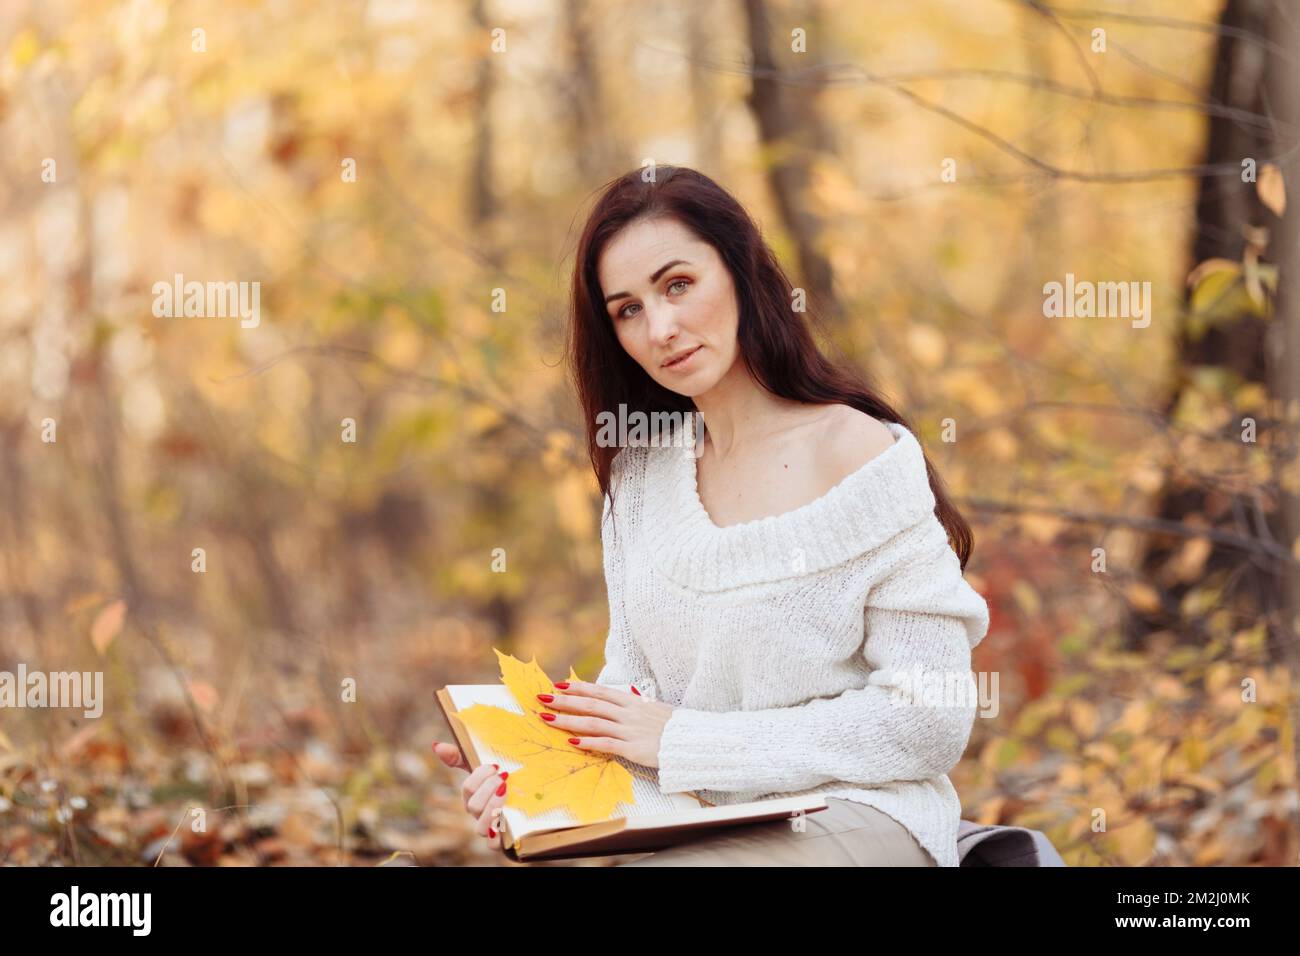 Vue latérale de la femme brune heureuse en lunettes de vue assise sur le banc et livre de lecture dans le parc. Photo de haute qualité Banque D'Images